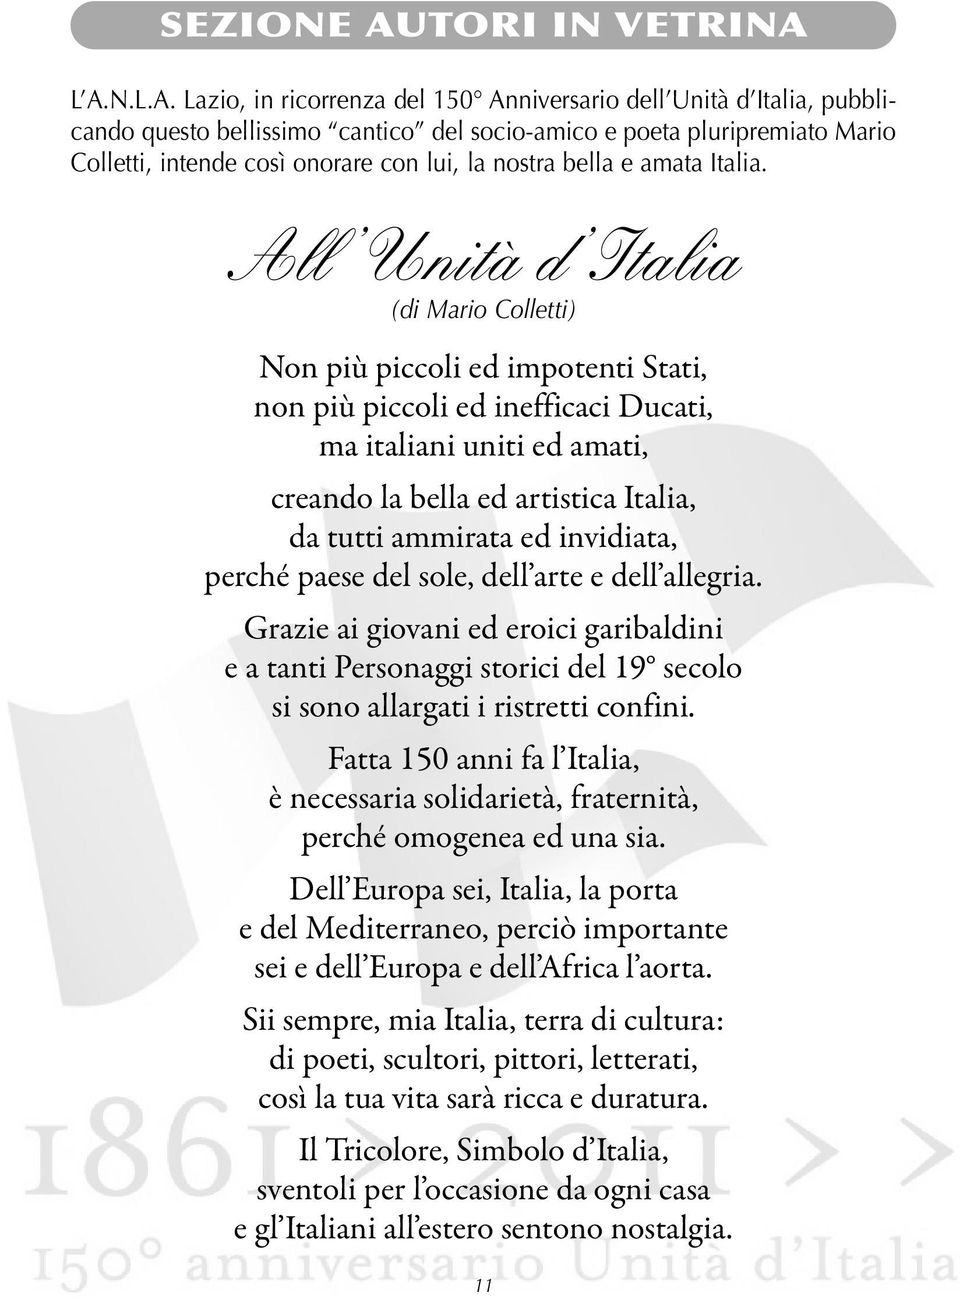 L A.N.L.A. Lazio, in ricorrenza del 150 Anniversario dell Unità d Italia, pubblicando questo bellissimo cantico del socio-amico e poeta pluripremiato Mario Colletti, intende così onorare con lui, la